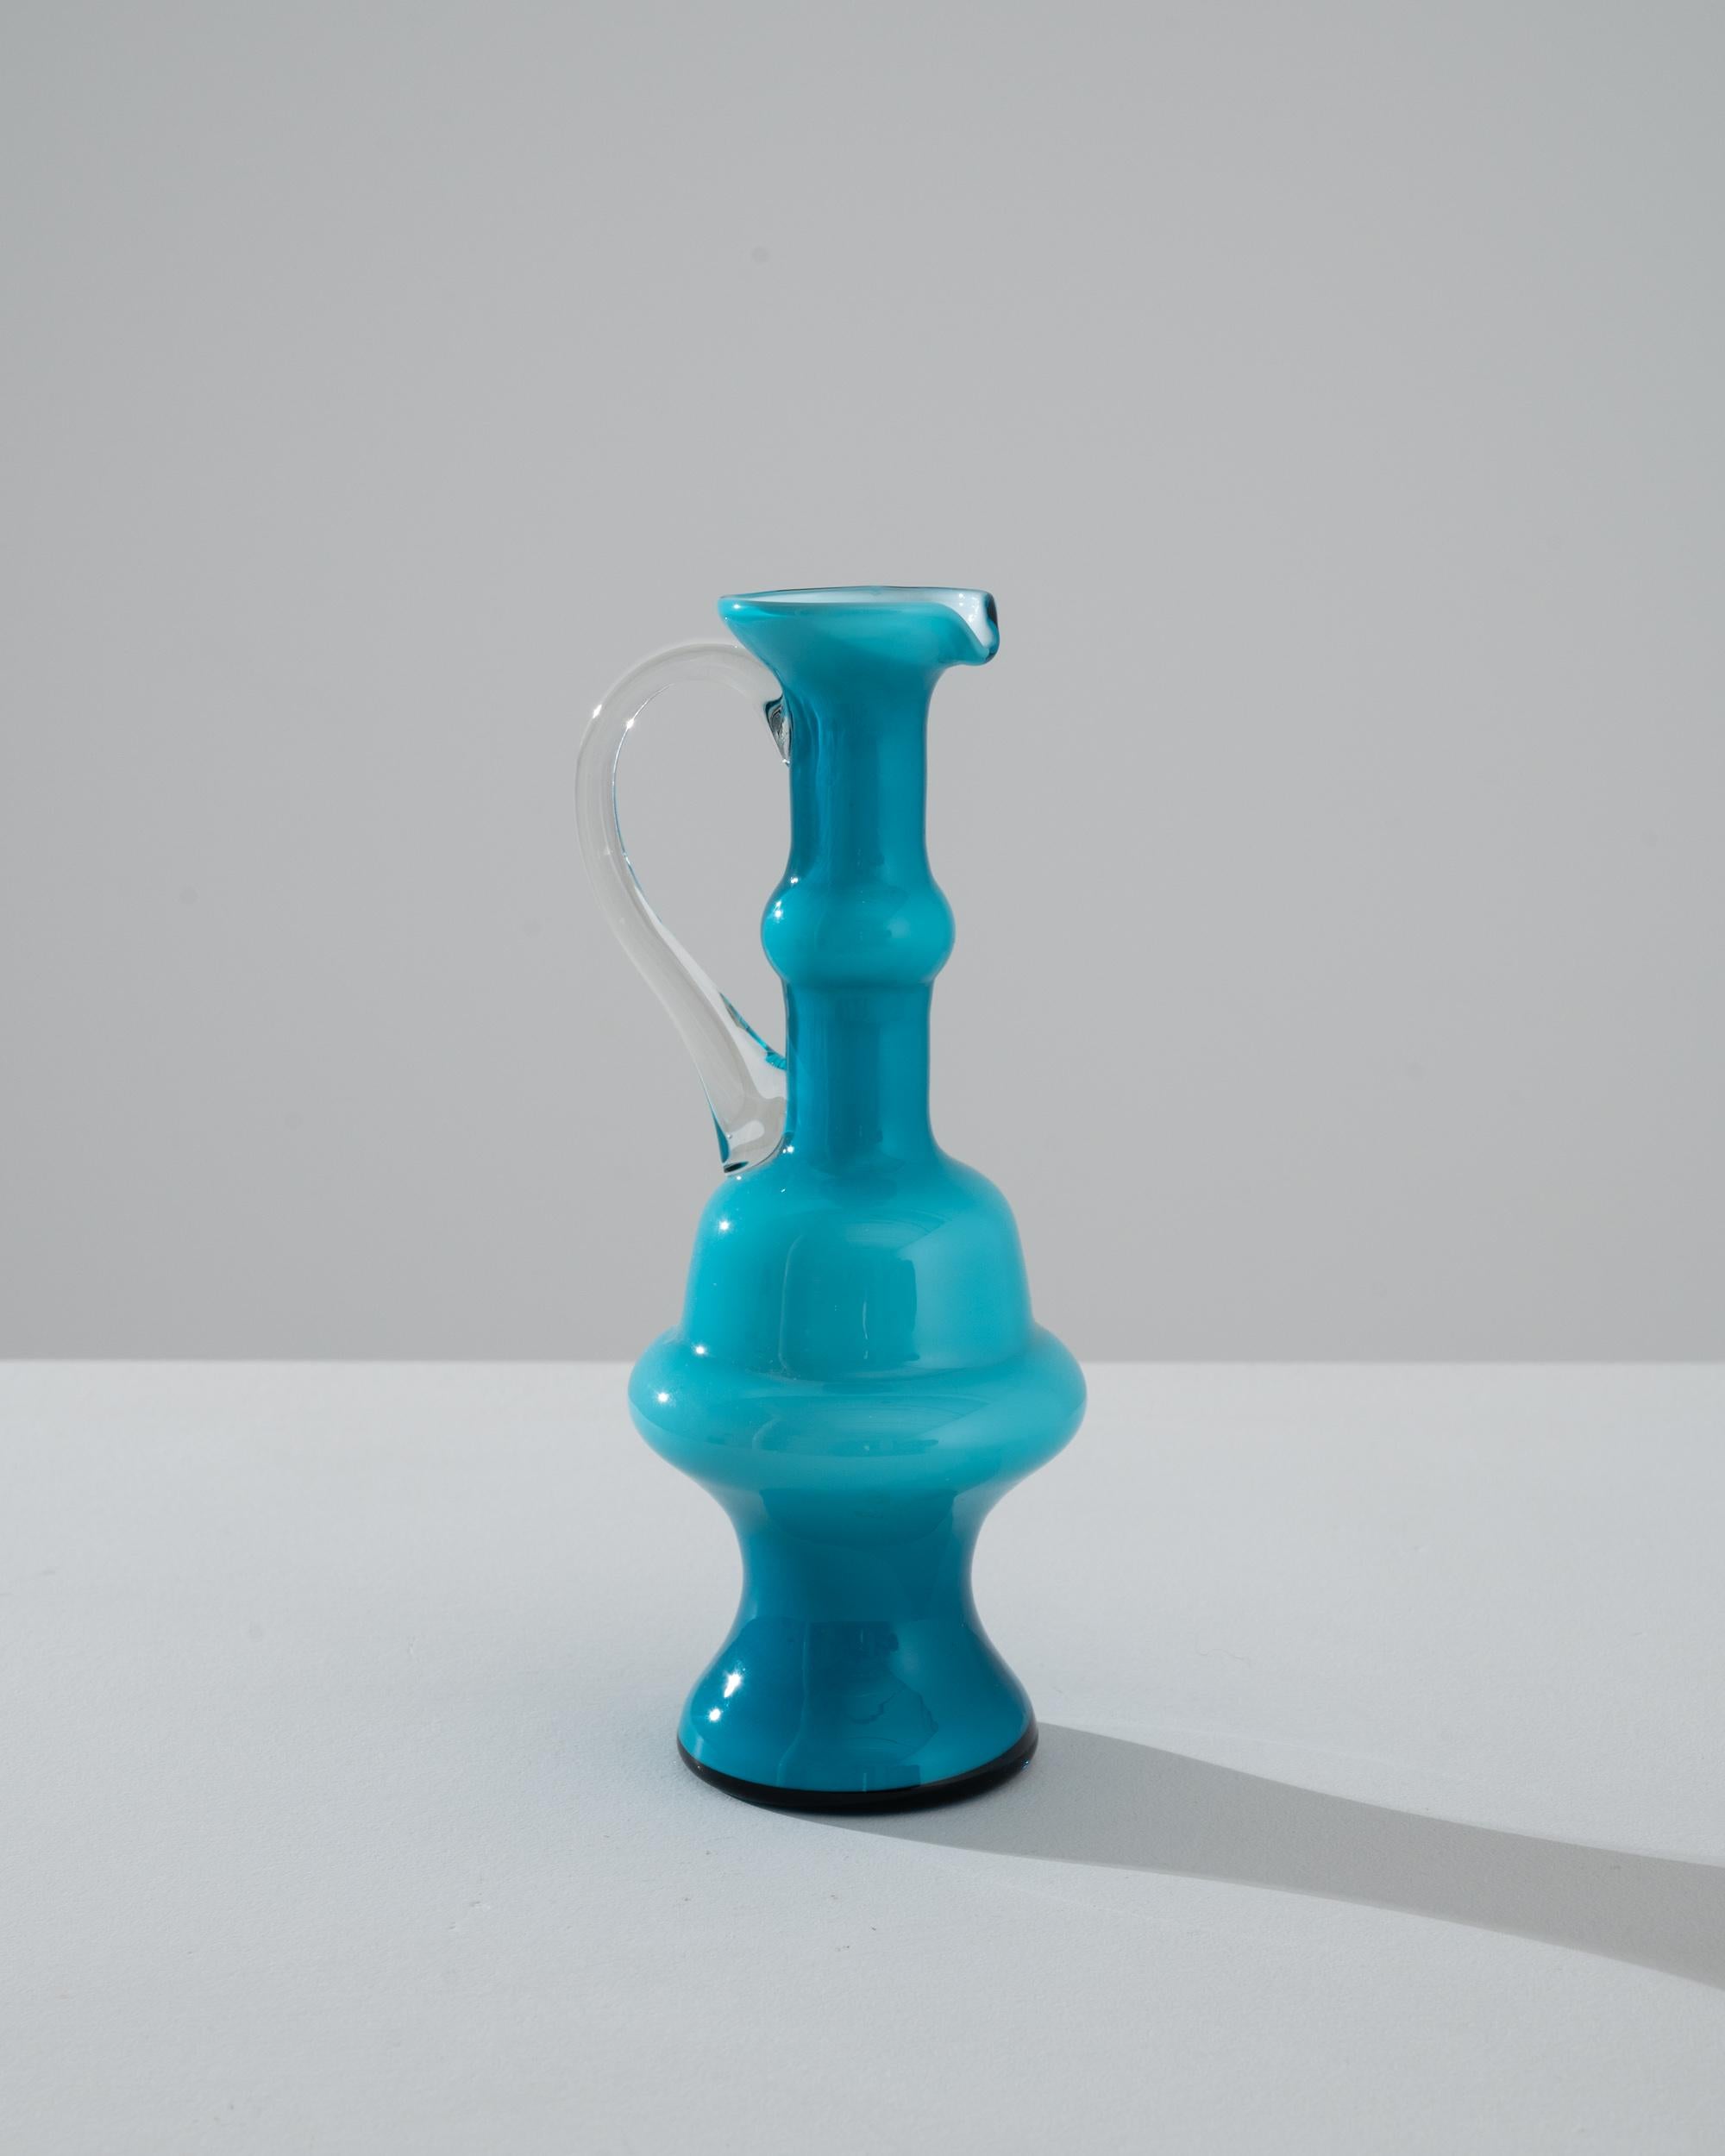 Admirez un morceau de l'histoire italienne avec cette superbe cruche en verre bleu italien des années 1960, une incarnation de la forme et de la fonction en une seule création artistique. Le verre bleu aqua vibrant, méticuleusement façonné en un